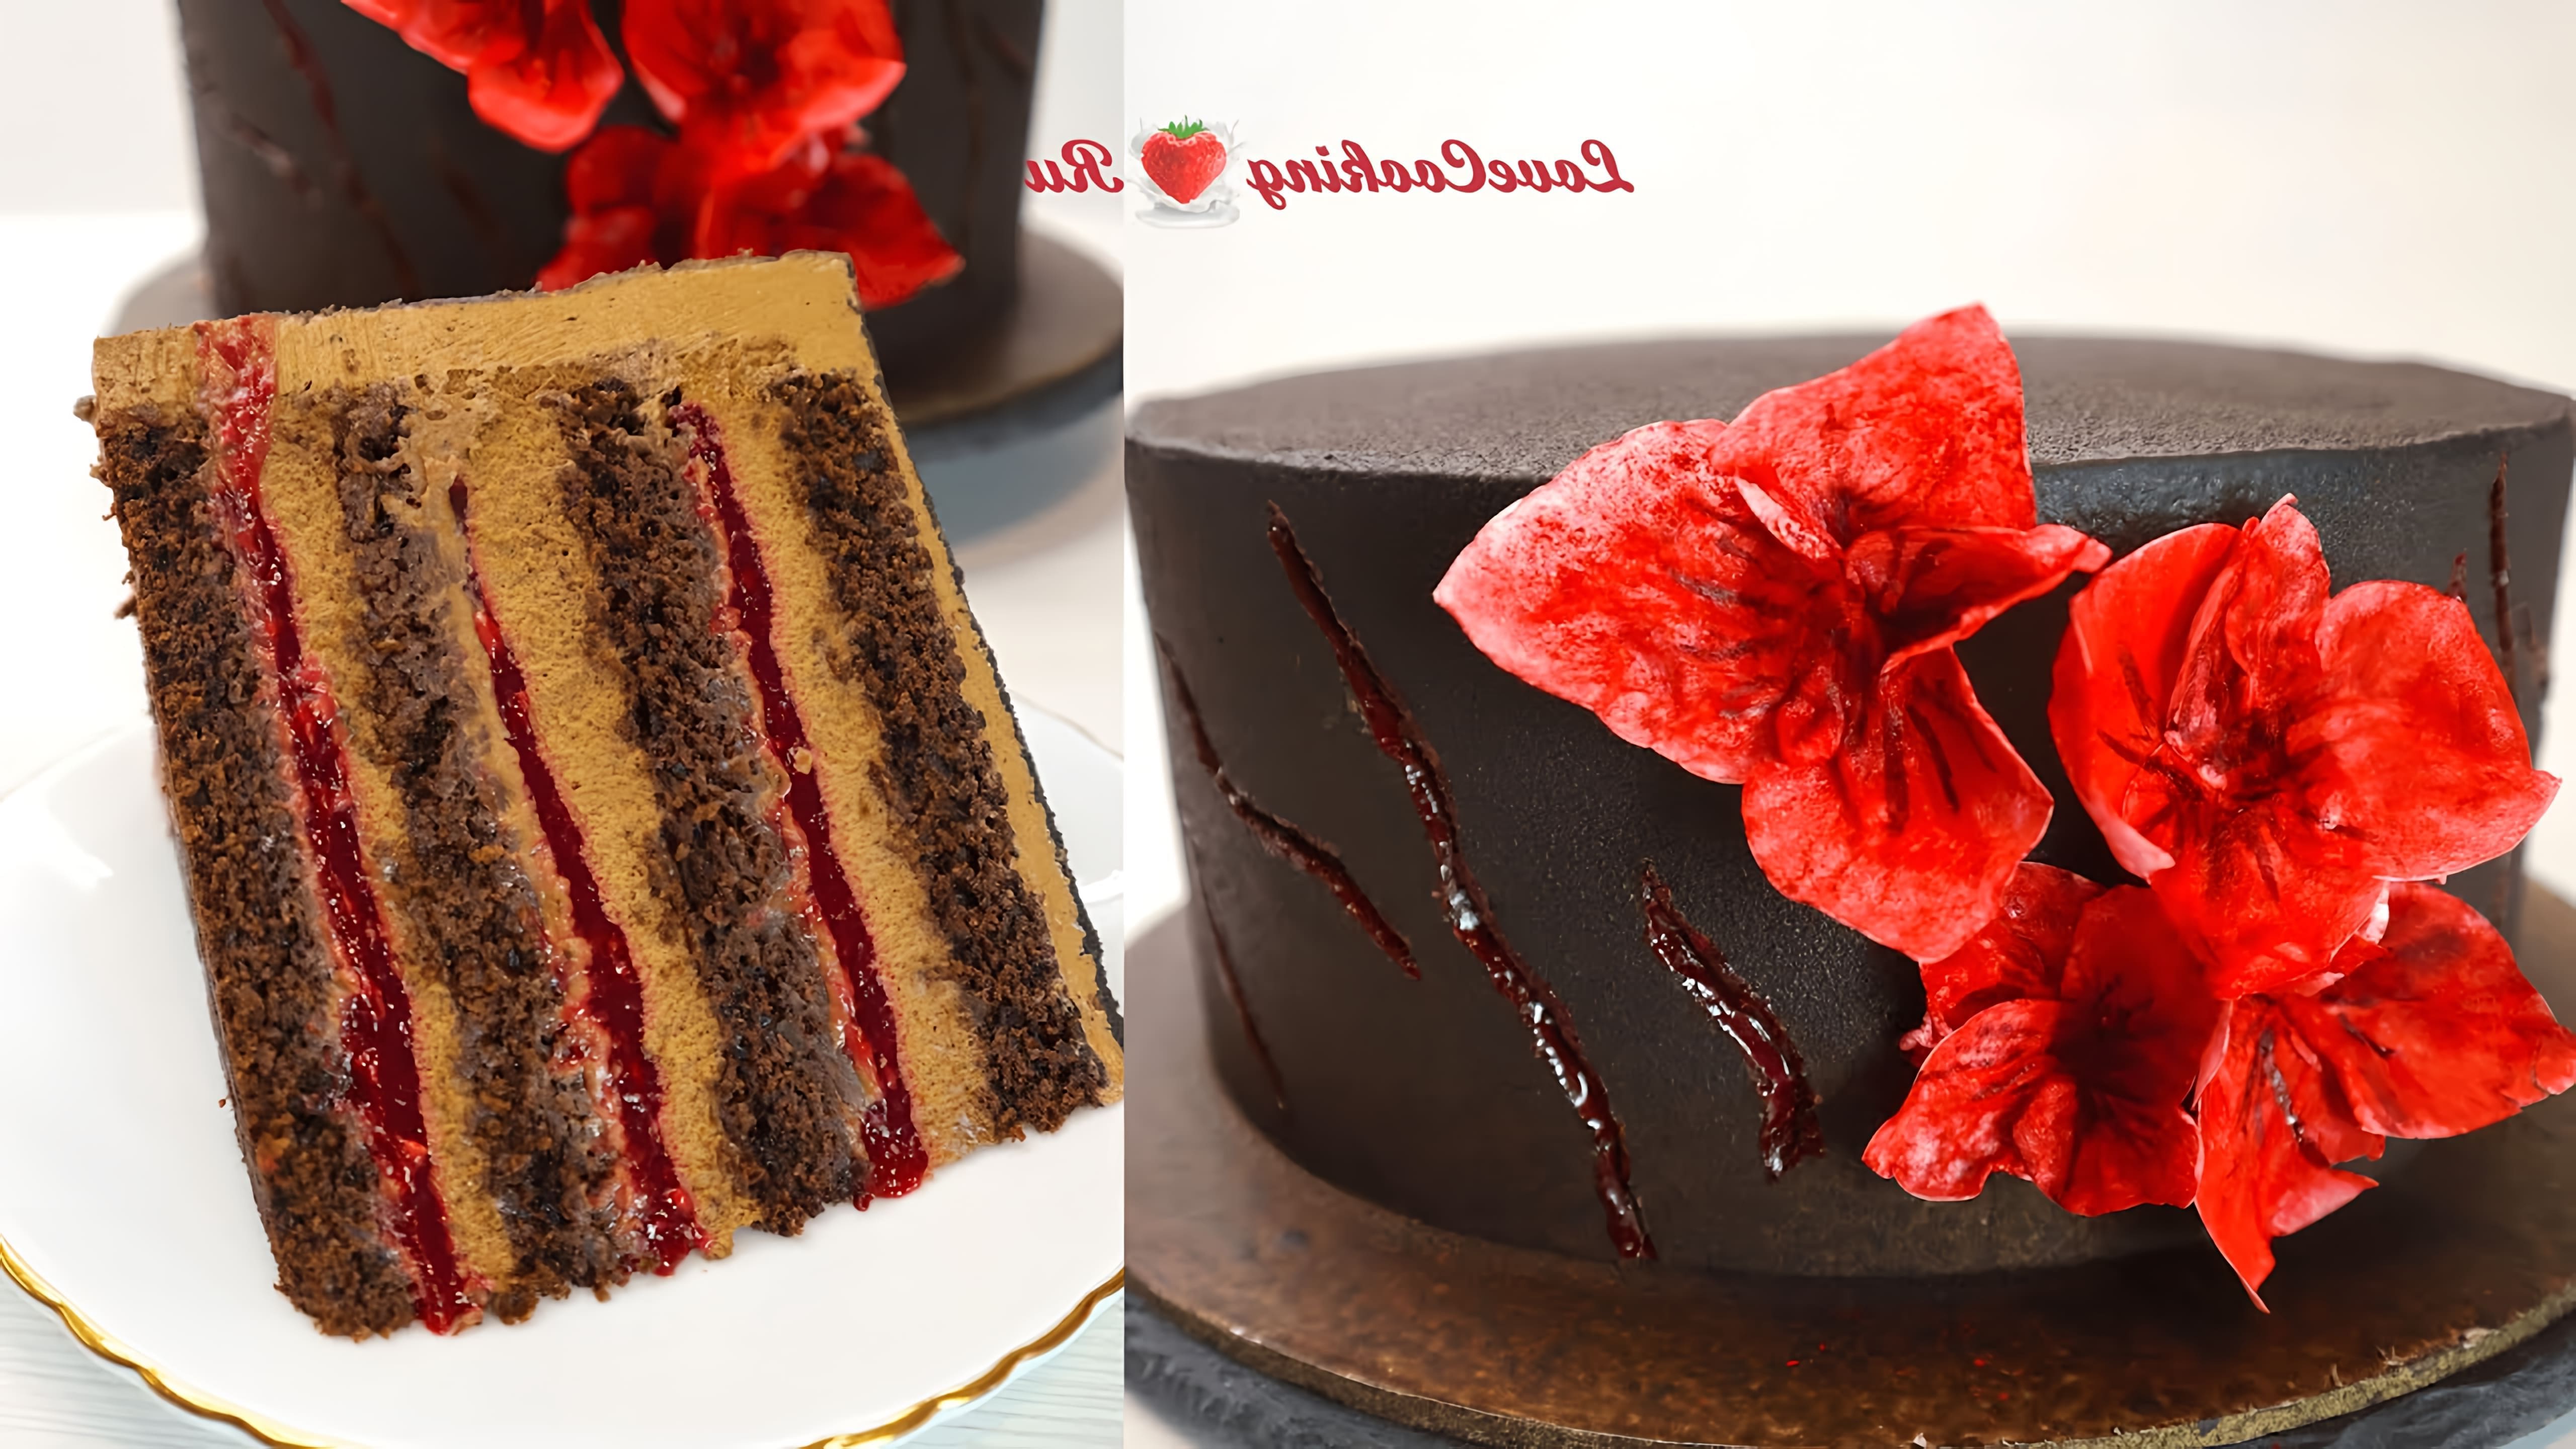 Шоколадный торт с малиной "Малина в шоколаде" - это видео-ролик, который демонстрирует процесс приготовления вкусного и ароматного десерта